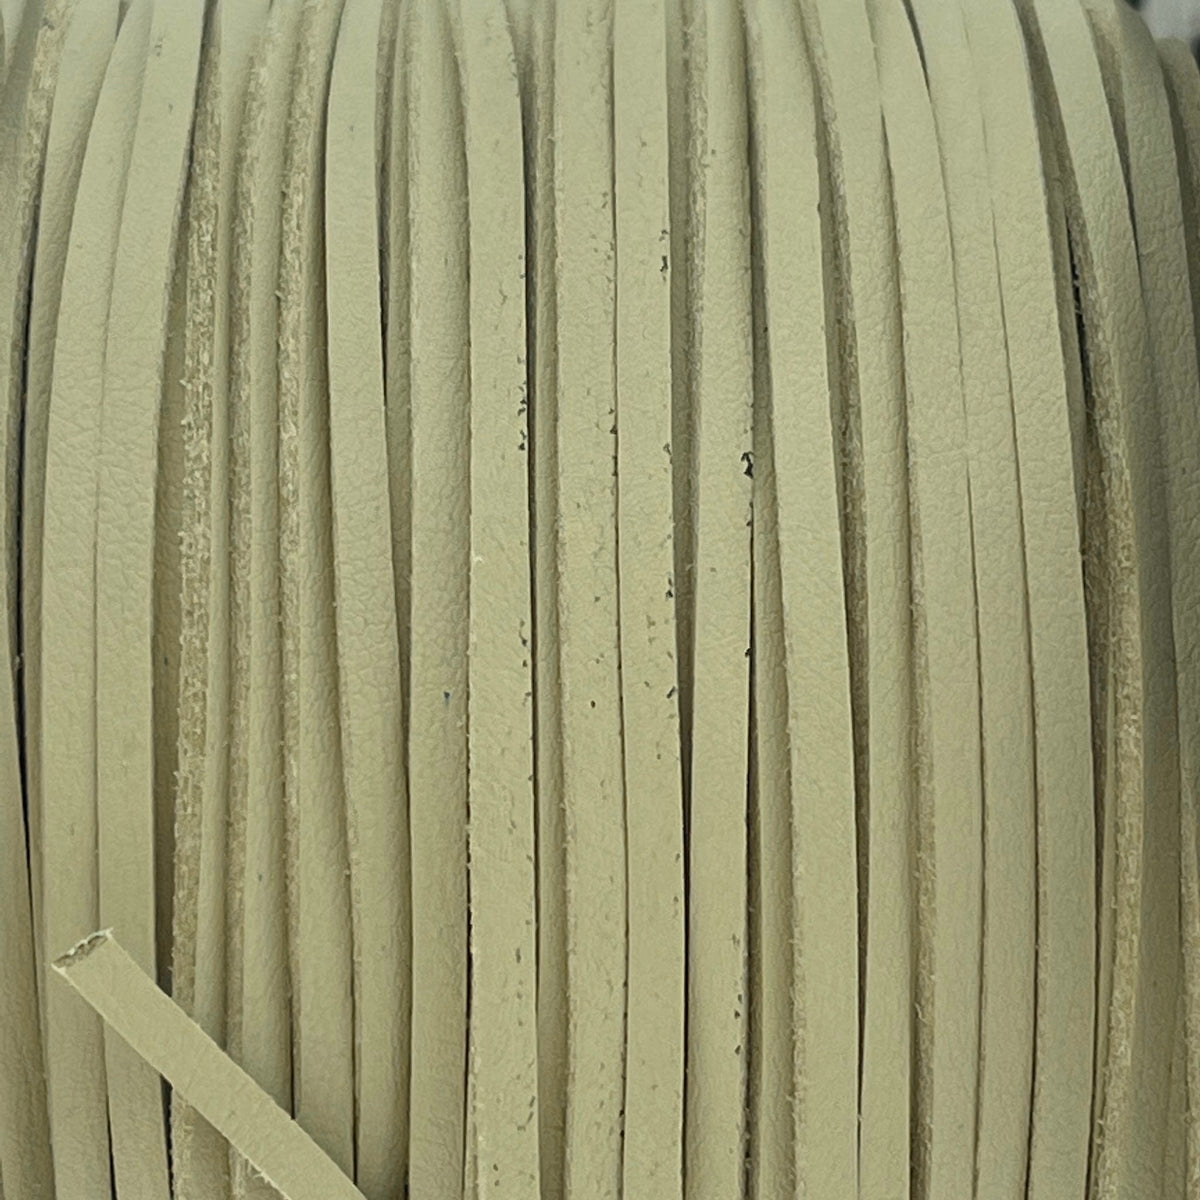 Imitatie suede leather beige 3x1,5mm - 2 meter-koord-Kraaltjes van Renate